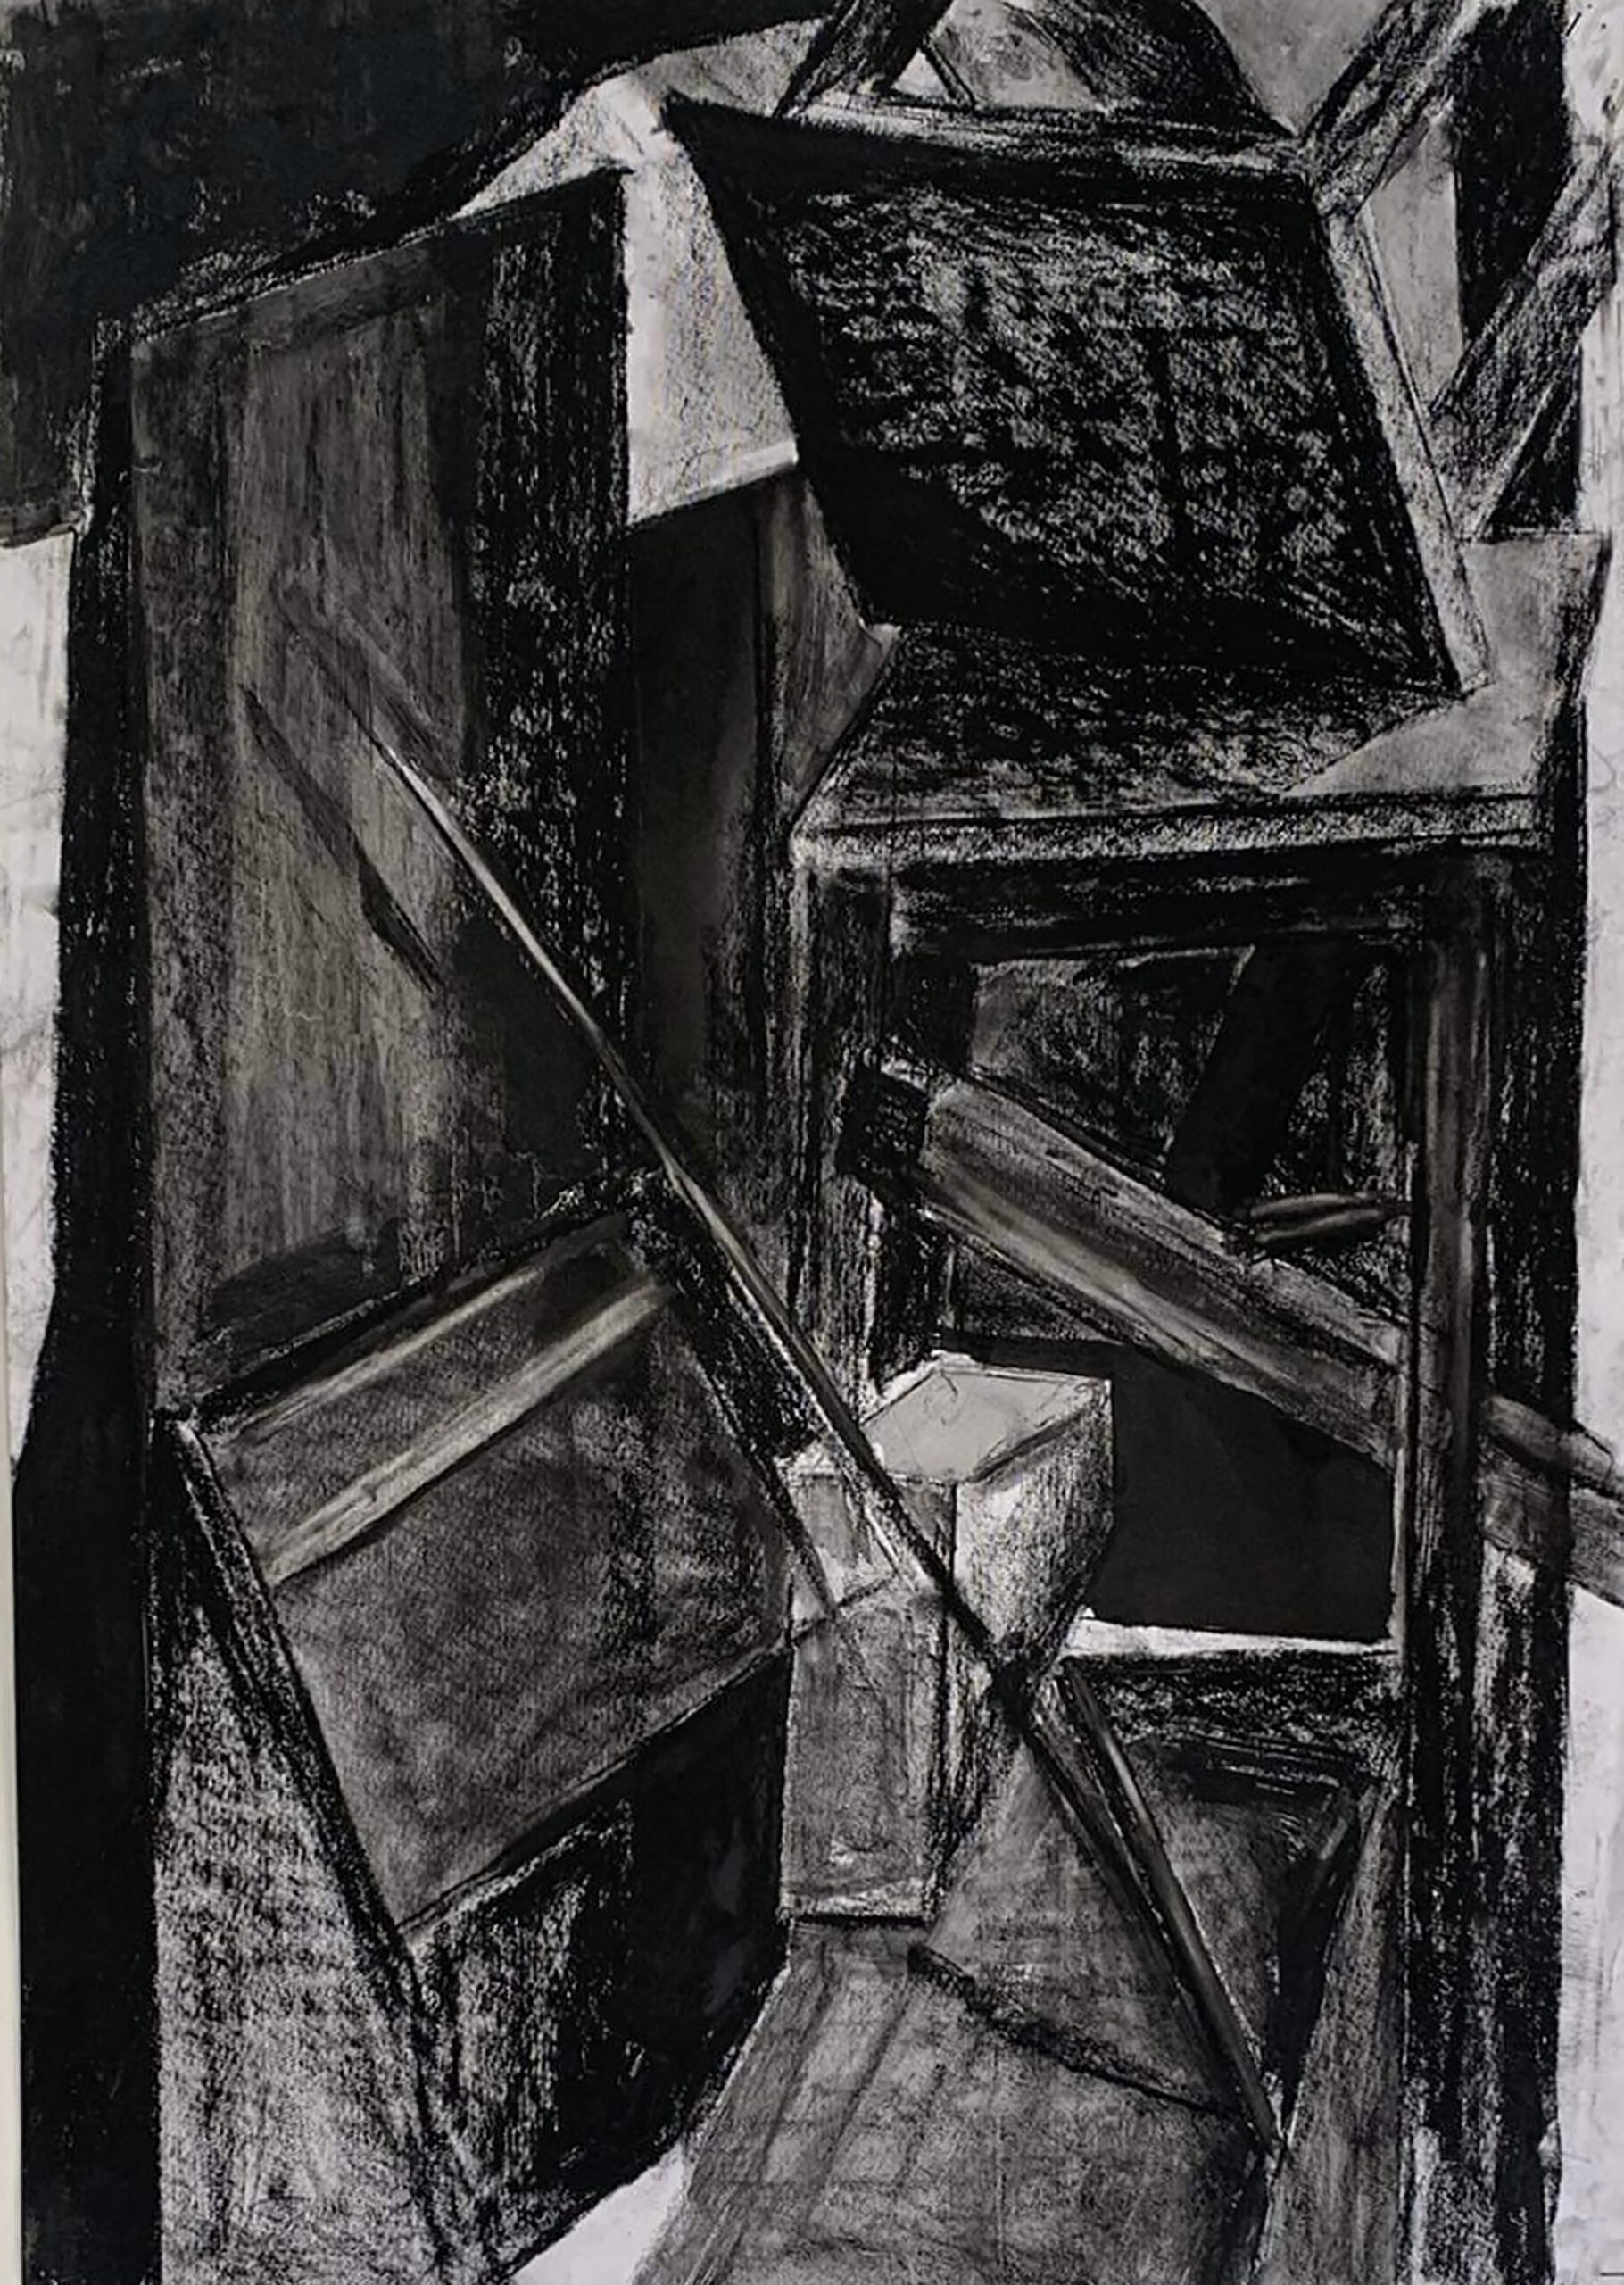 Fotografia rysunku martwej natury w odcieniach czerni, podzielona na geometryczne płaszczyzny, skosy i linii, które sugerują przedstawienia przestrzeni złożonej z krzeseł, taboretu i innych elementów układu.